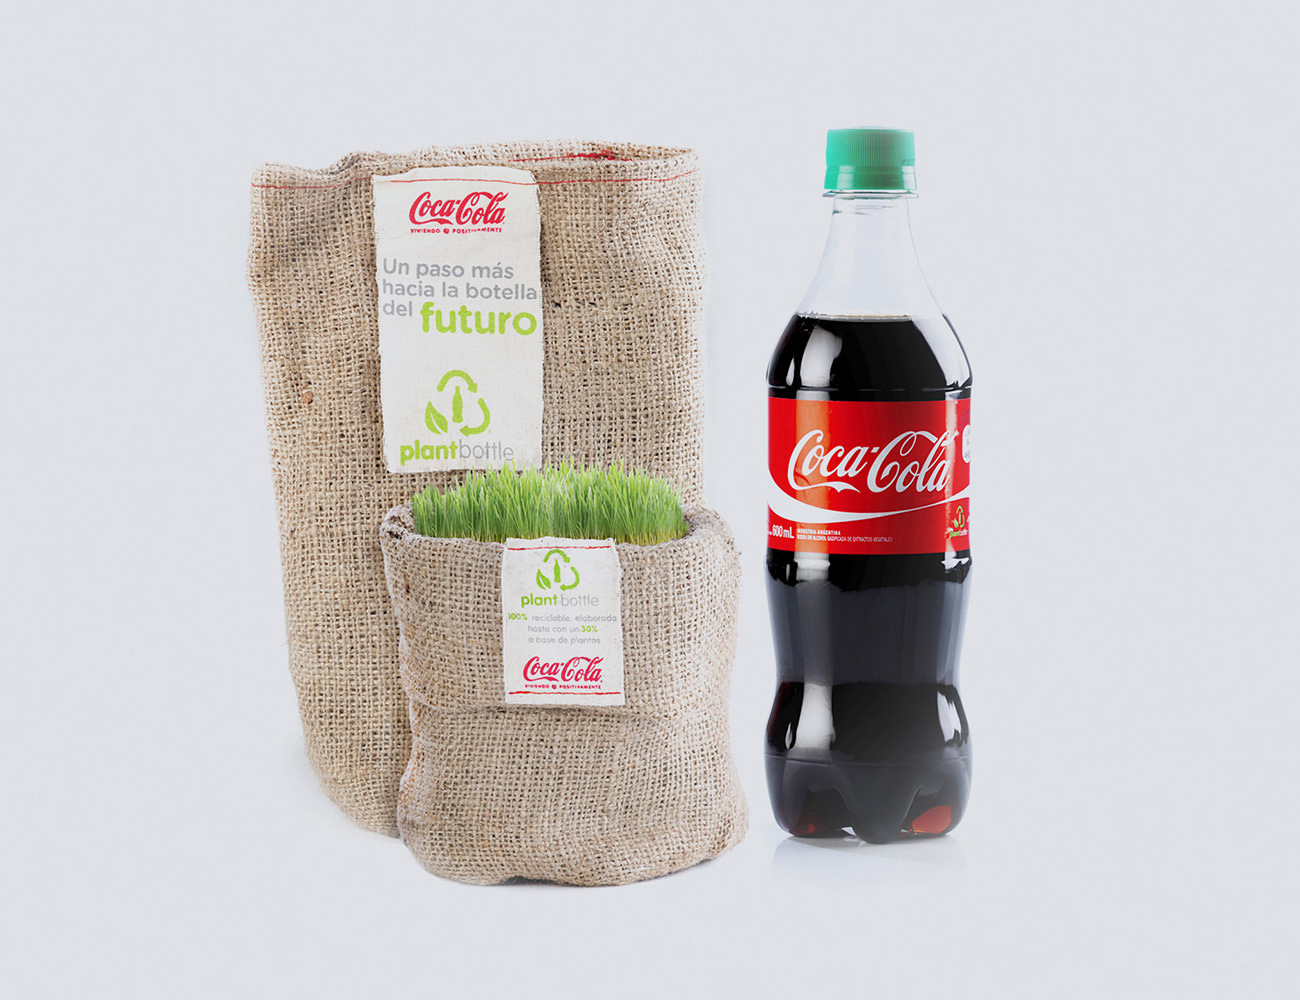 Coca cola plant bottle information